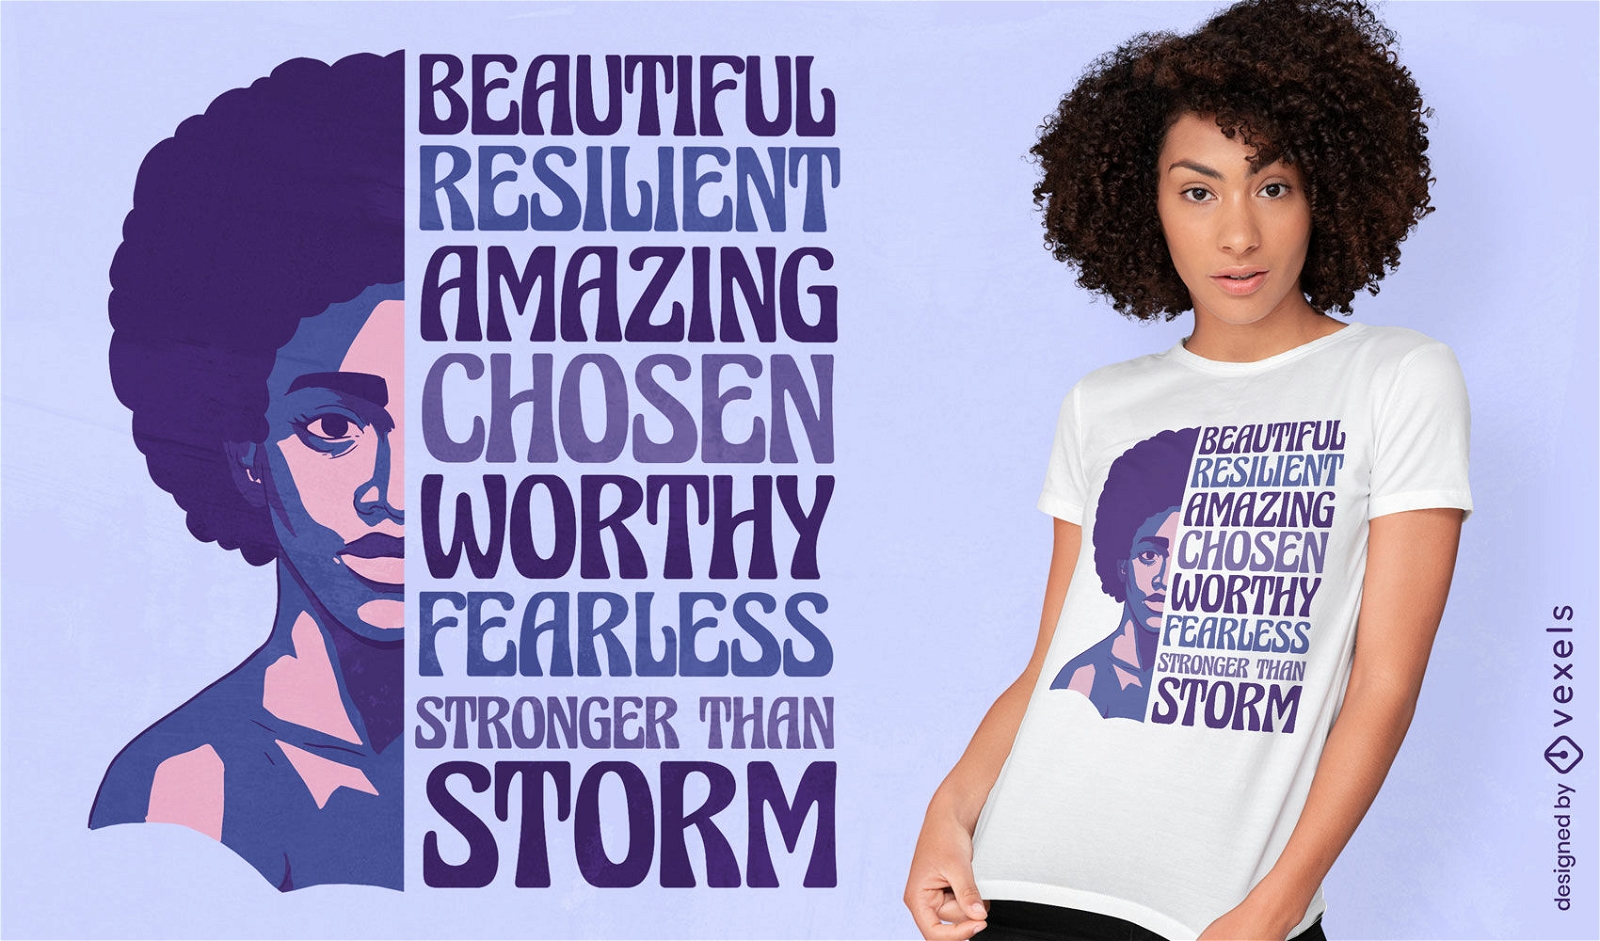 Diseño motivacional de camiseta de mujer afroamericana